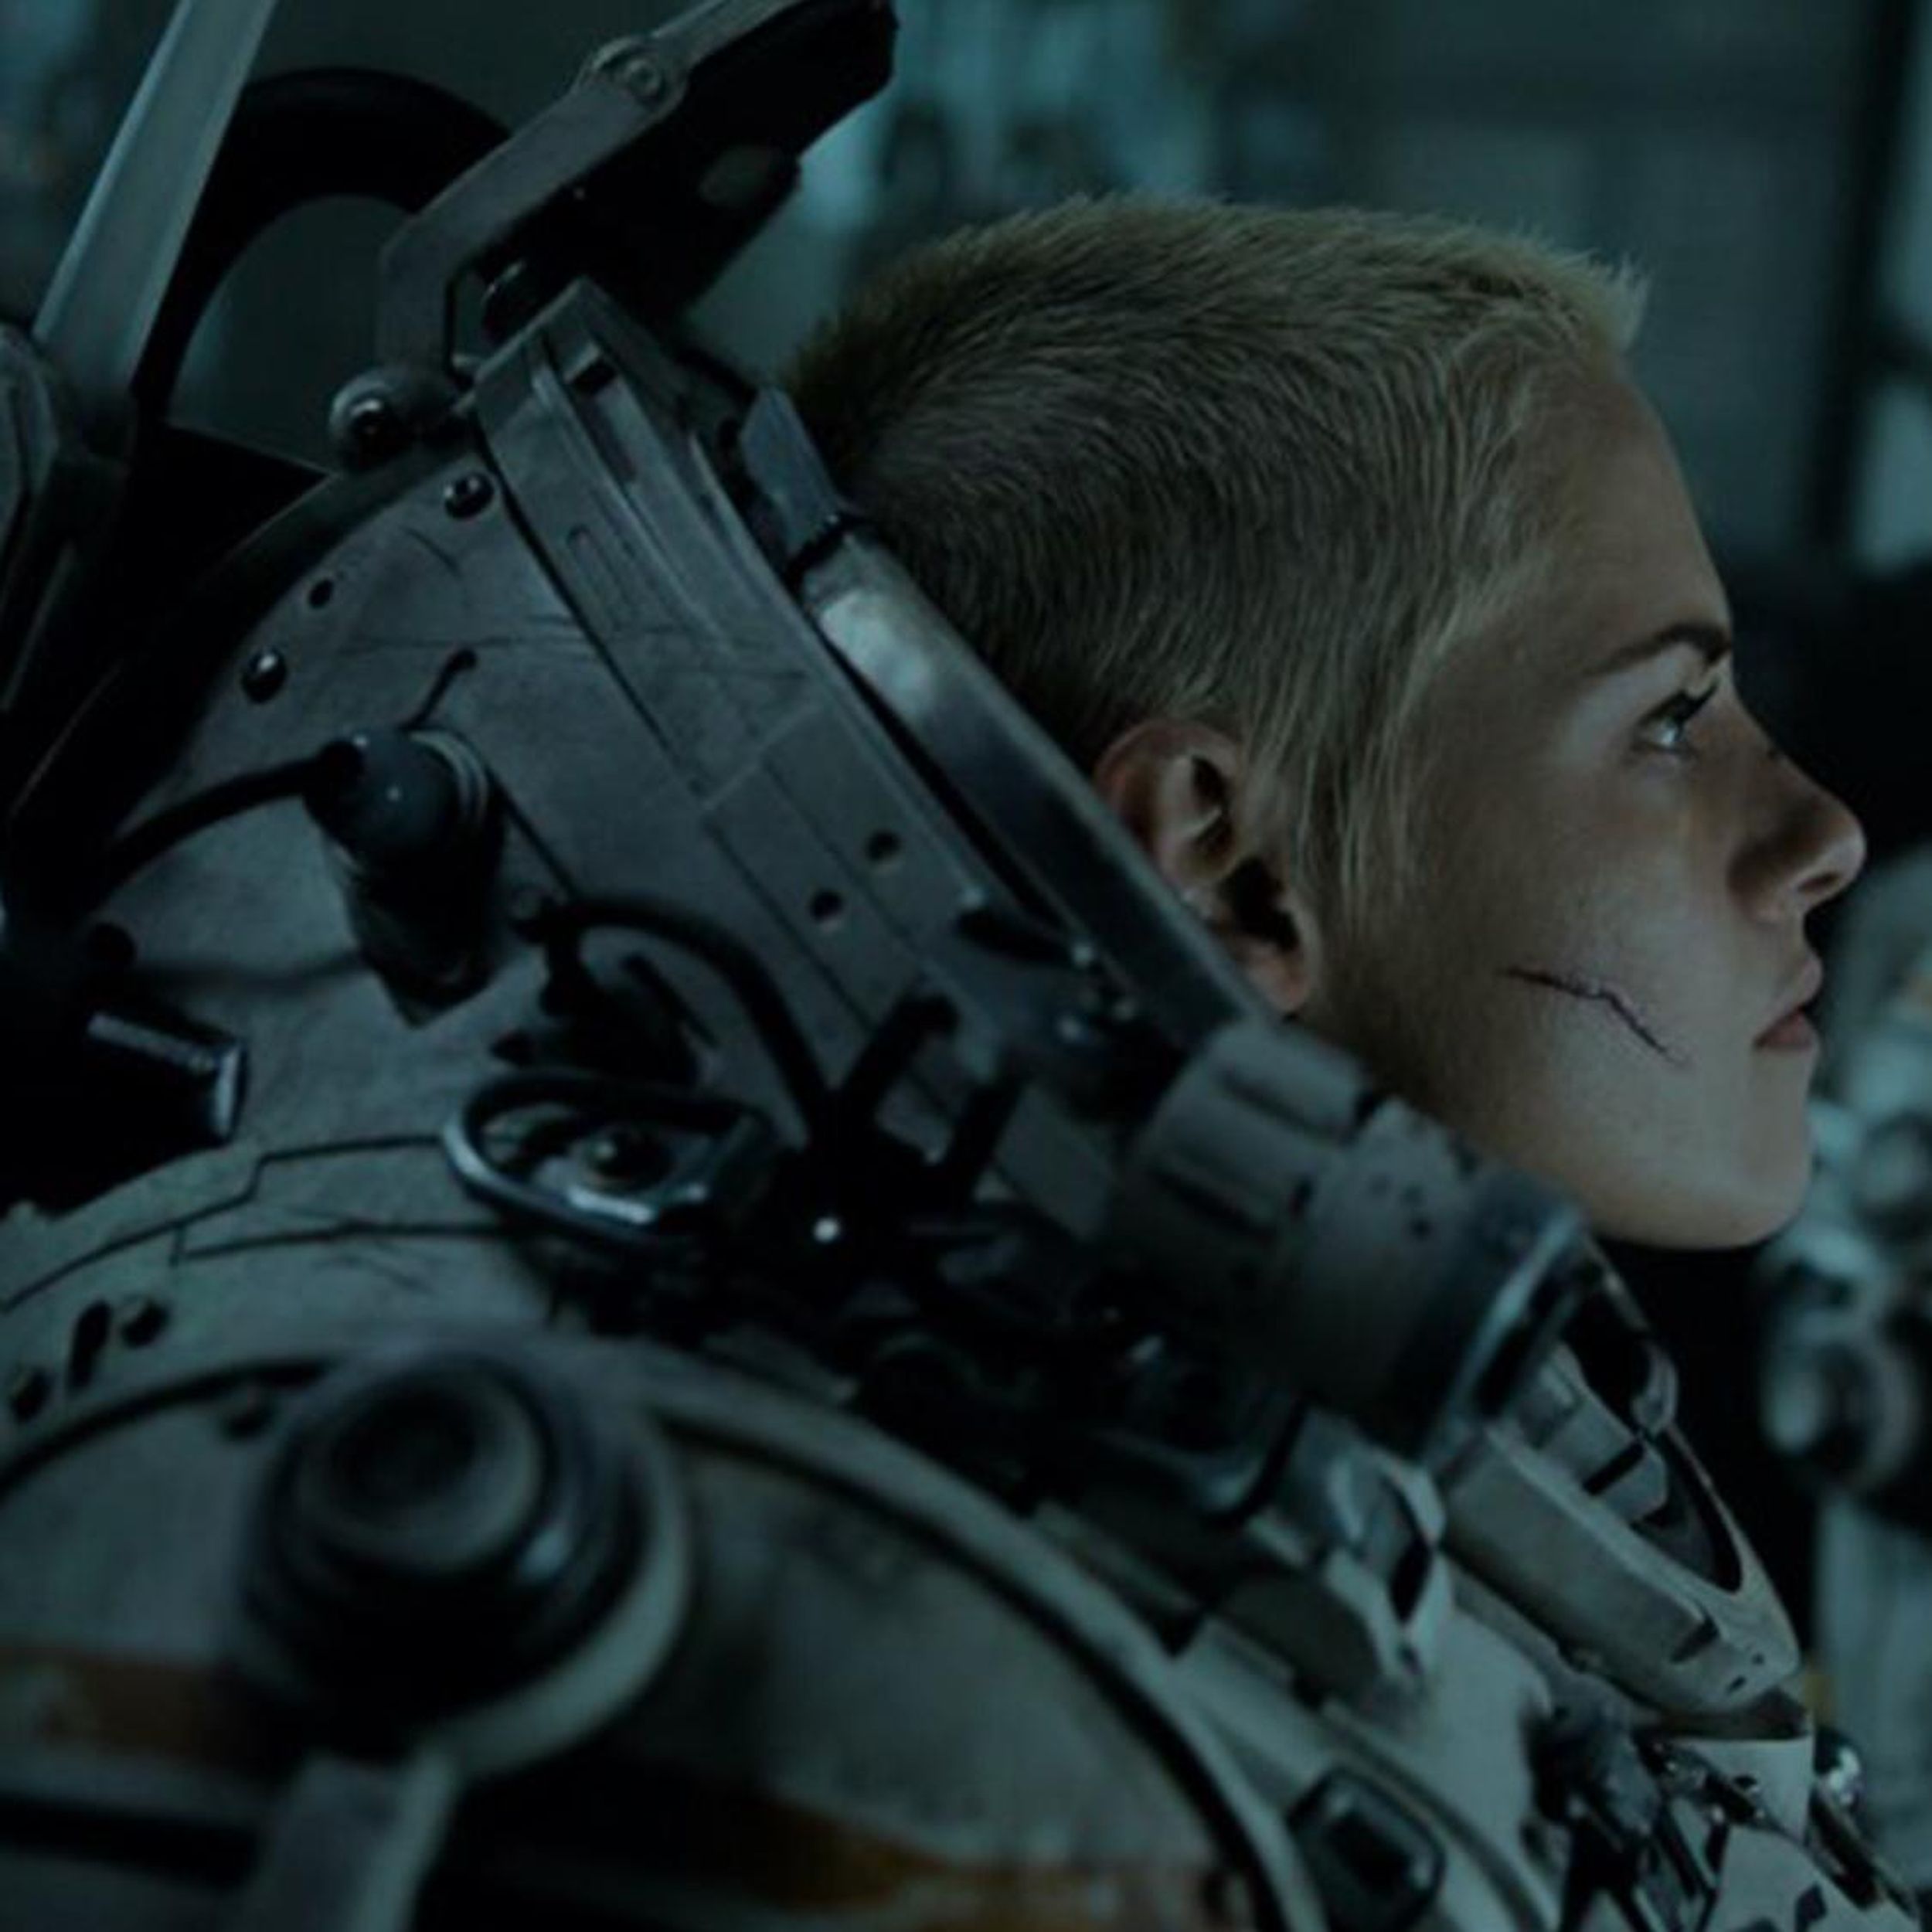 Underwater,' starring Kristen Stewart, is an homage to 'Alien